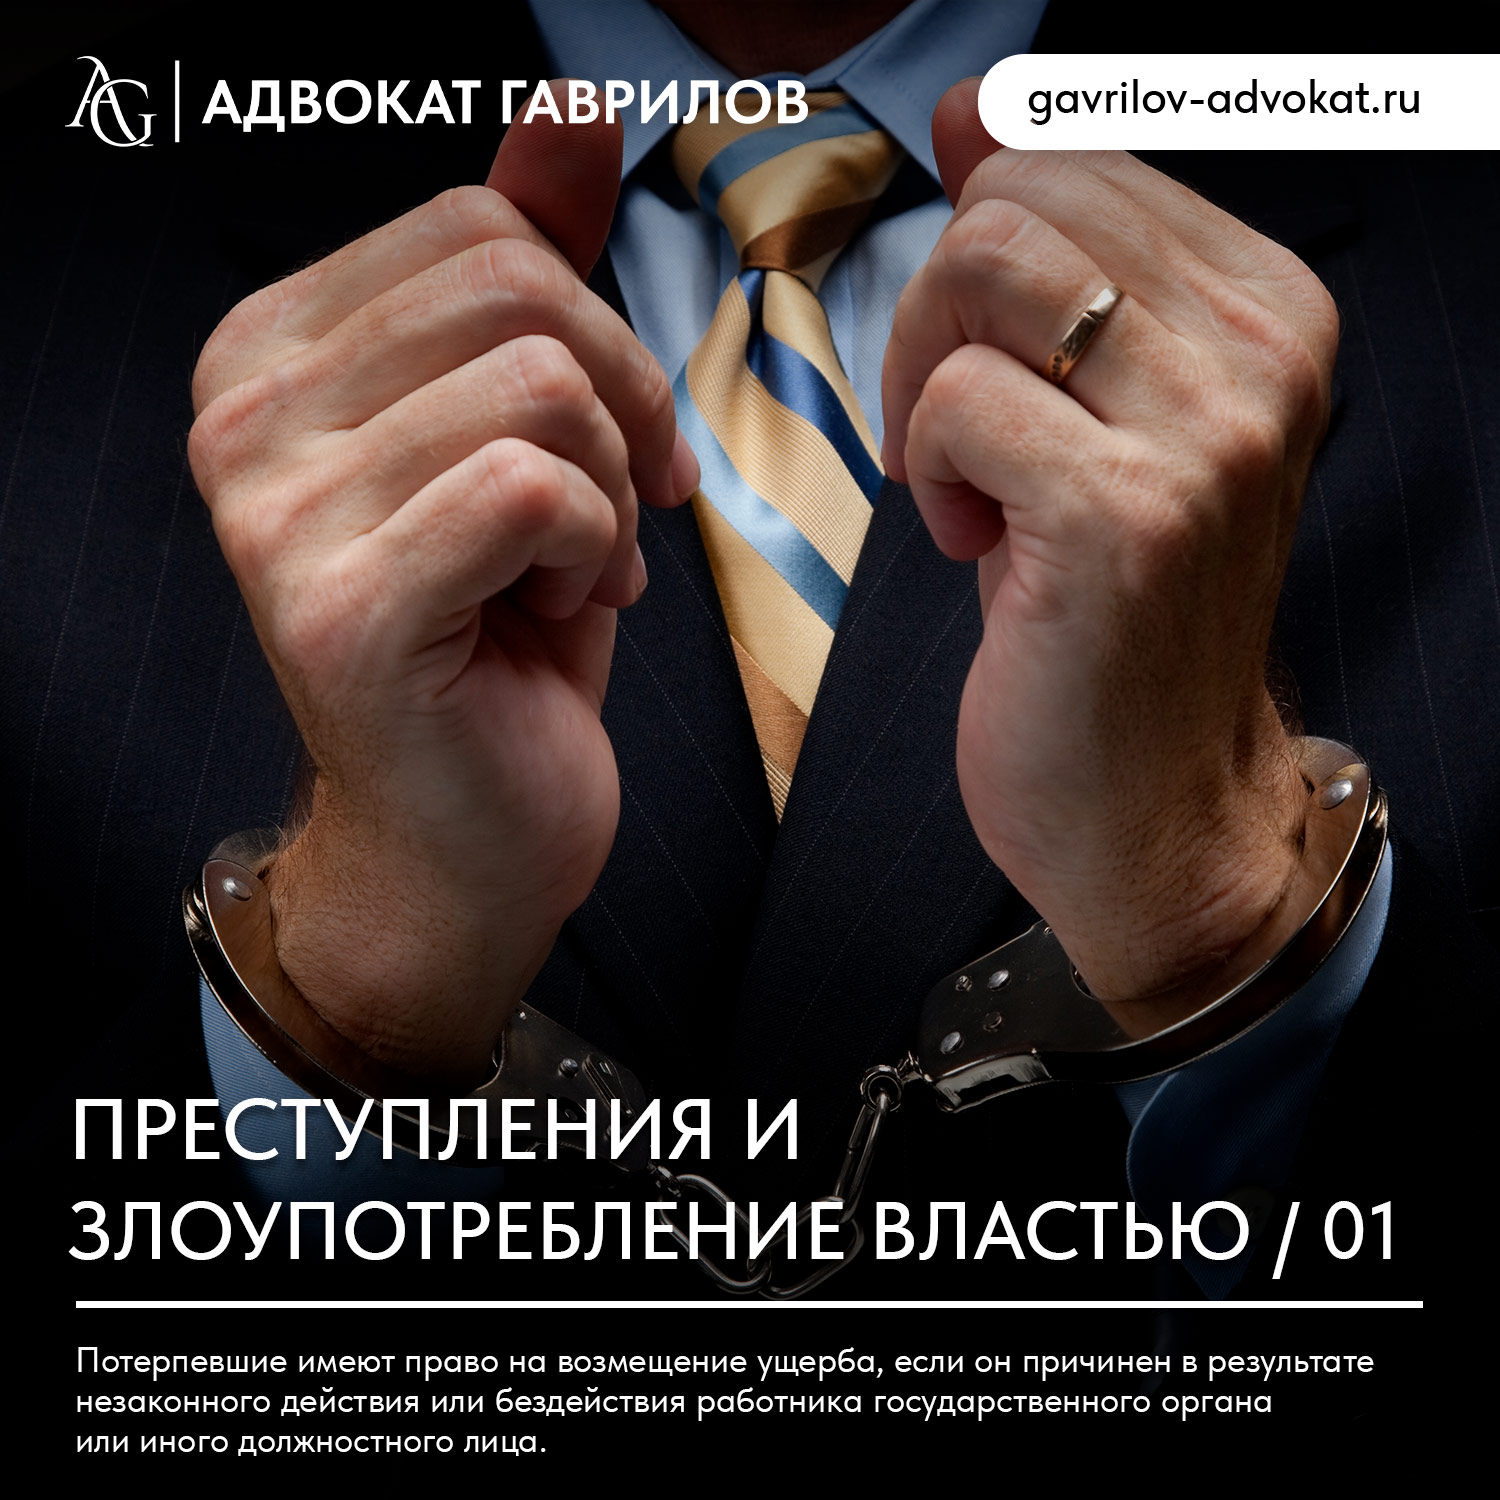 адвокат гаврилов москва юридические услуги консультация юрист юридическая помощь